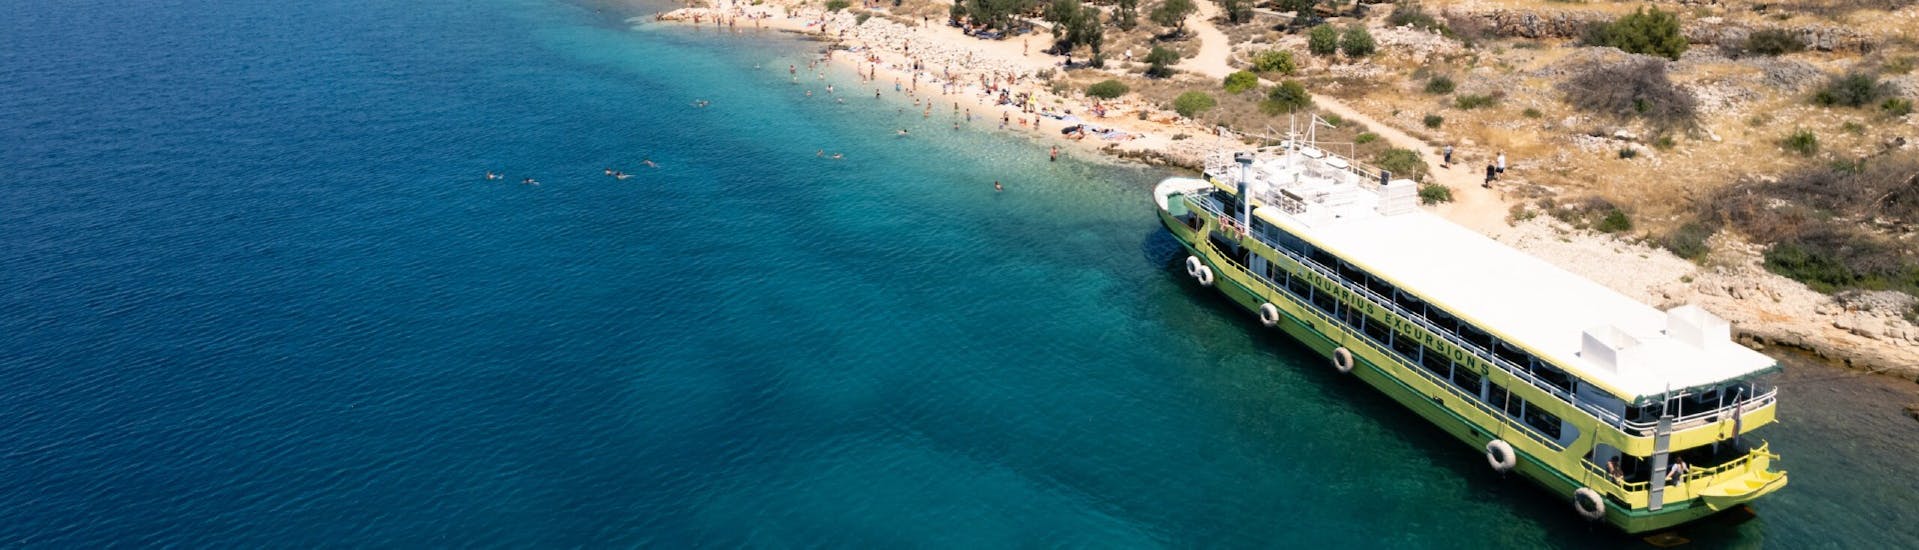 Barca della Gita in barca al Parco Nazionale delle Kornati con sosta a Lavdara e Ugliano con Aquarius Excursions Zadar.